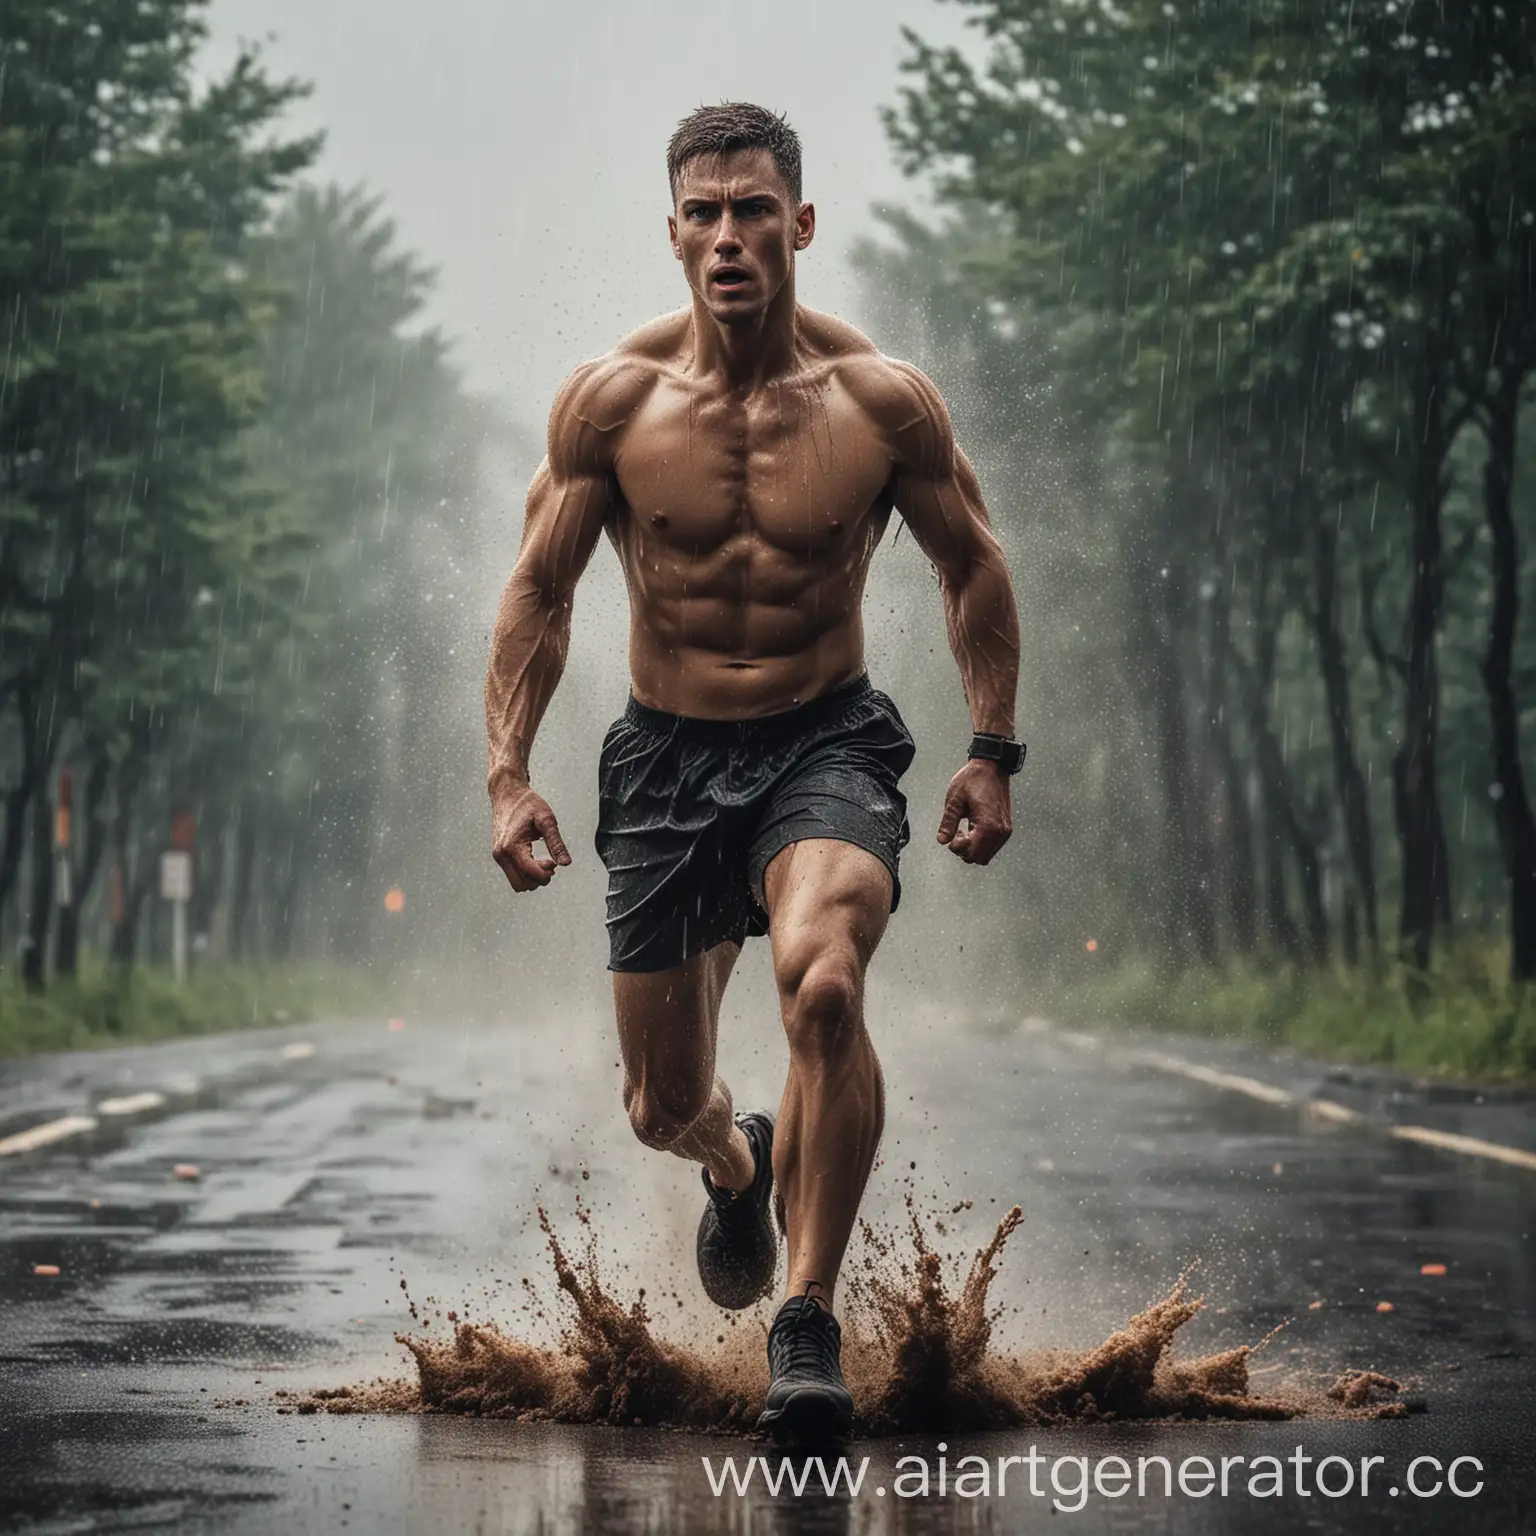 Сделай обложку для челленджа пробежек на свежем воздухе в 5 утра на асфальте под дождём и бегущего человека в военной форме спортивного телосложения с большой мышечной массой